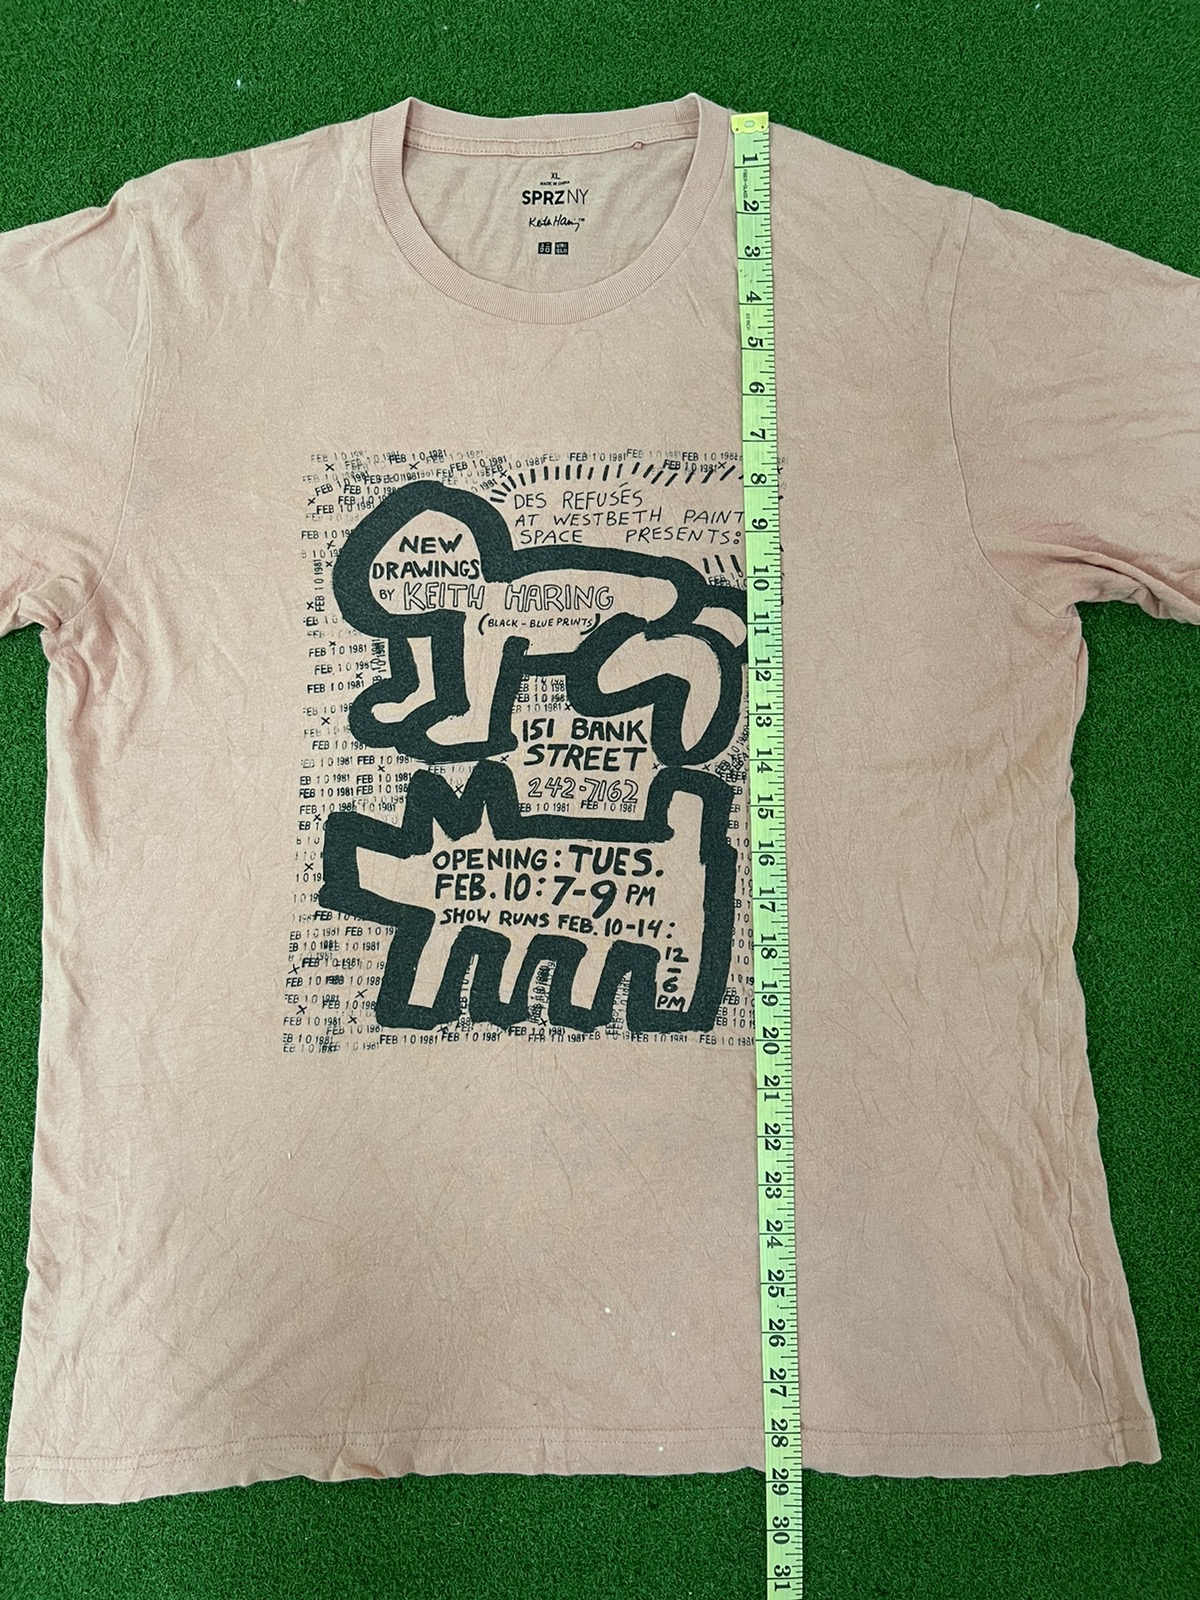 Jason - Uniqlo Keith Haring Party Of Life Tee shirt / Eva / Murakami - 4